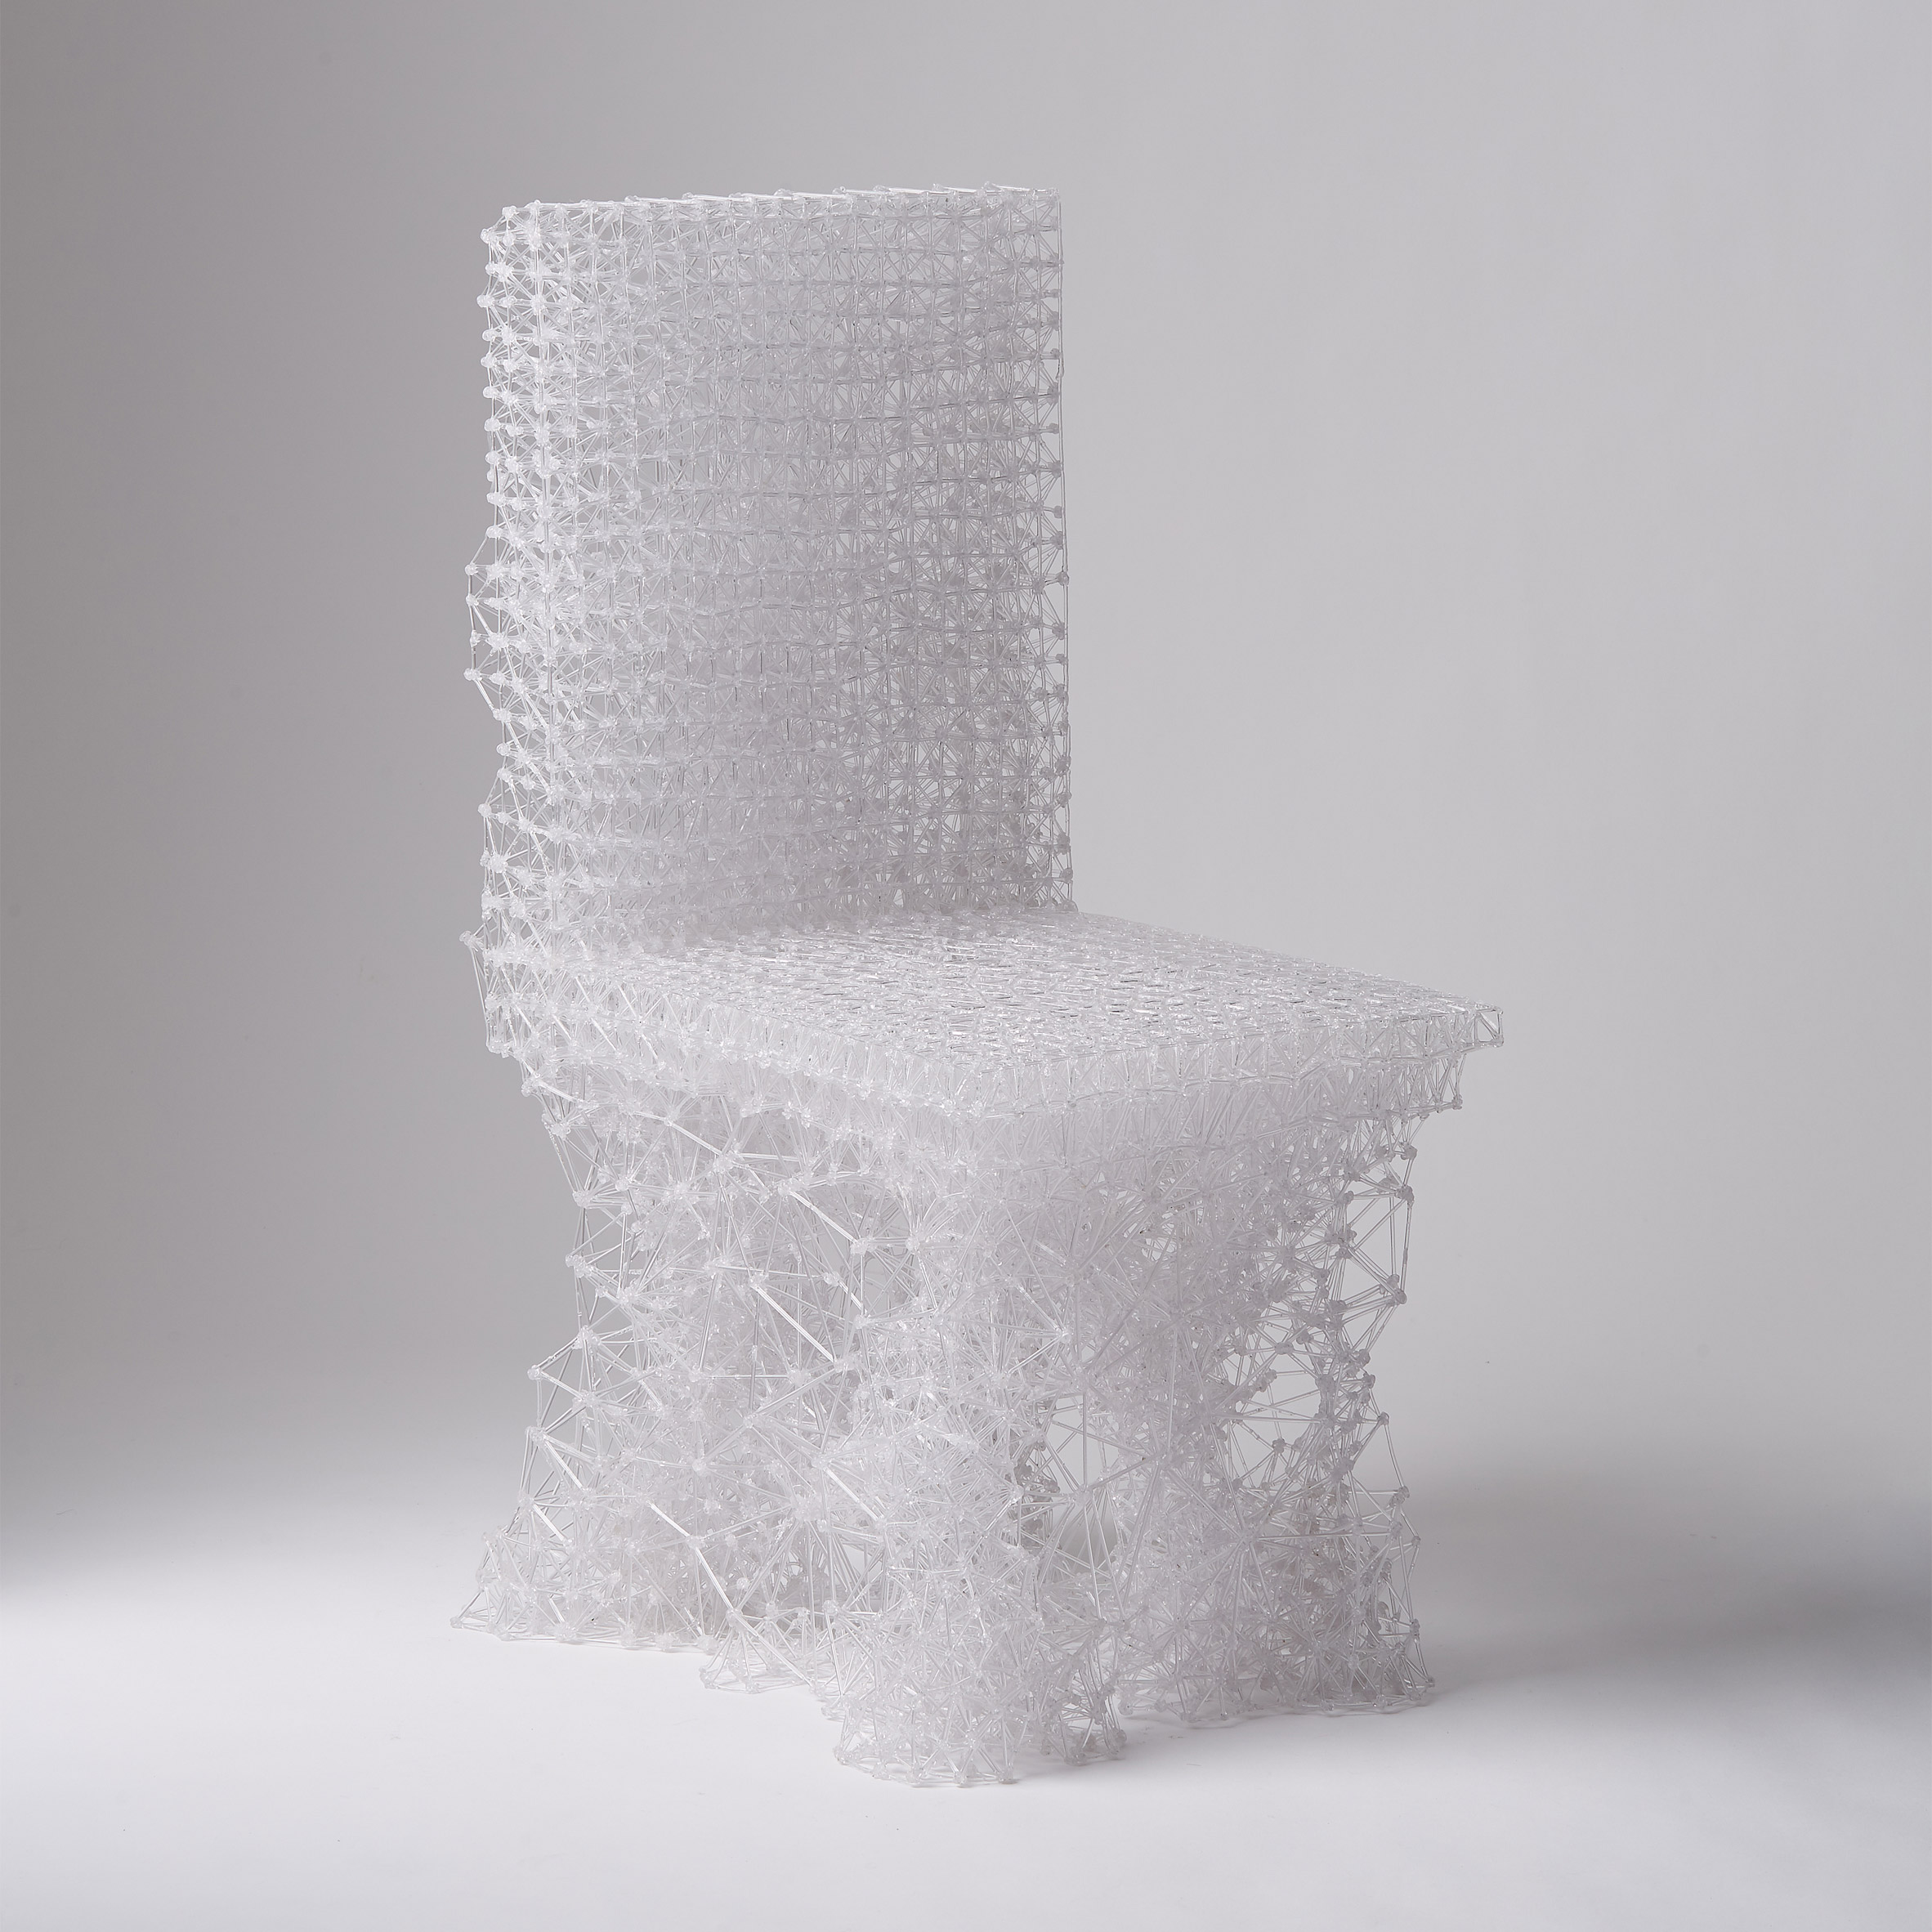 03-cadeira-futurista